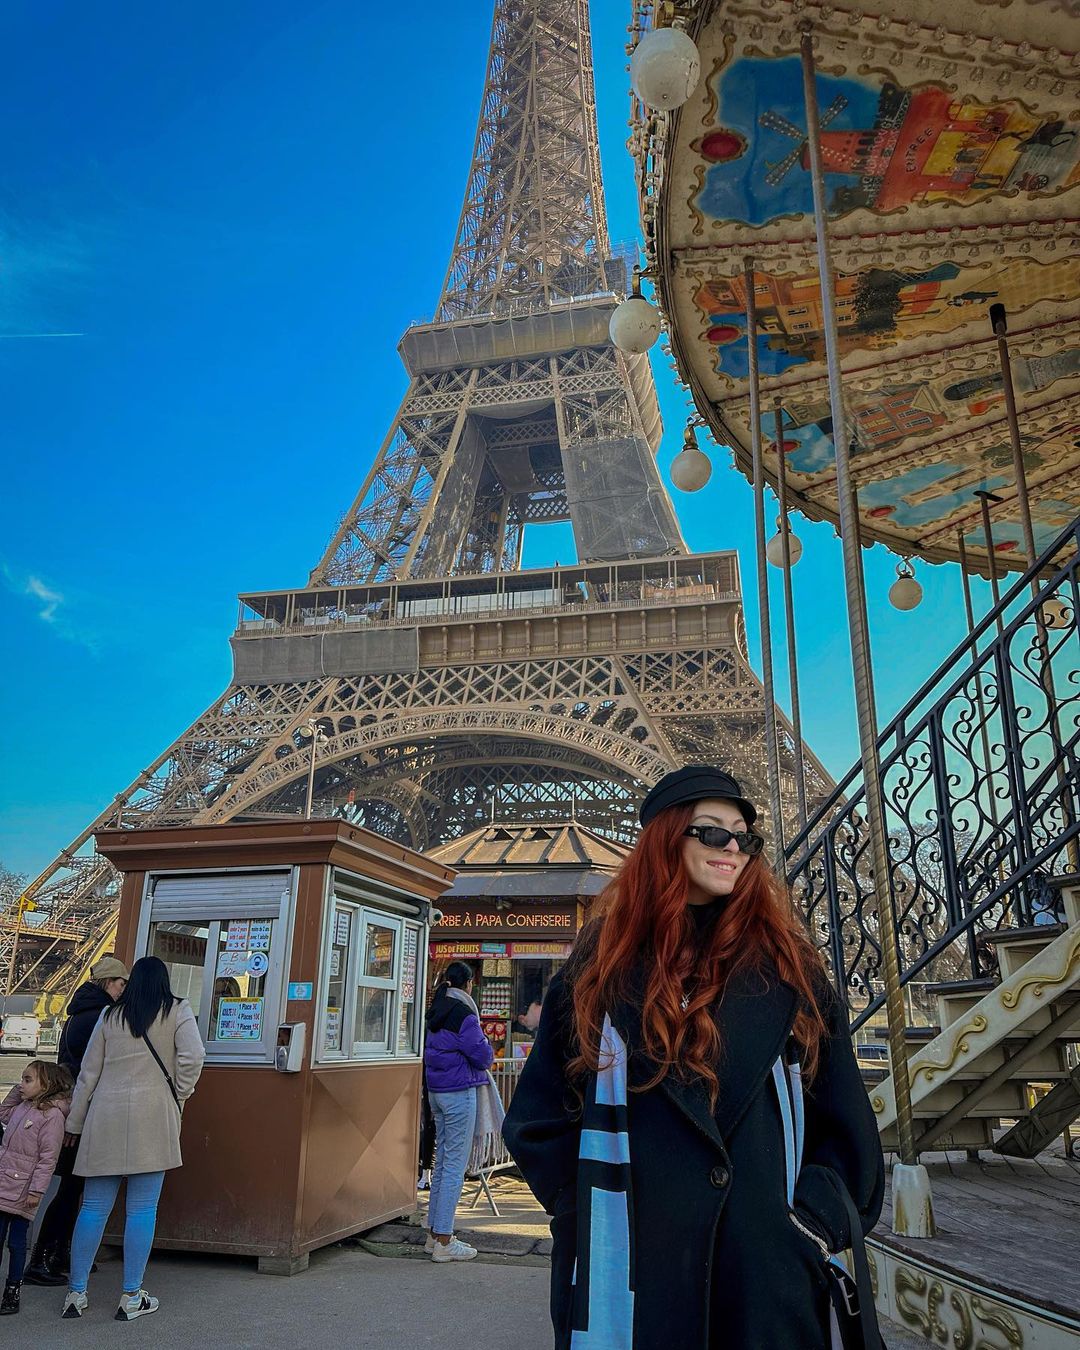 “Хочу жити, а не виживати“: старша дочка Олі Полякової обурила Мережу щасливим фото з Парижа